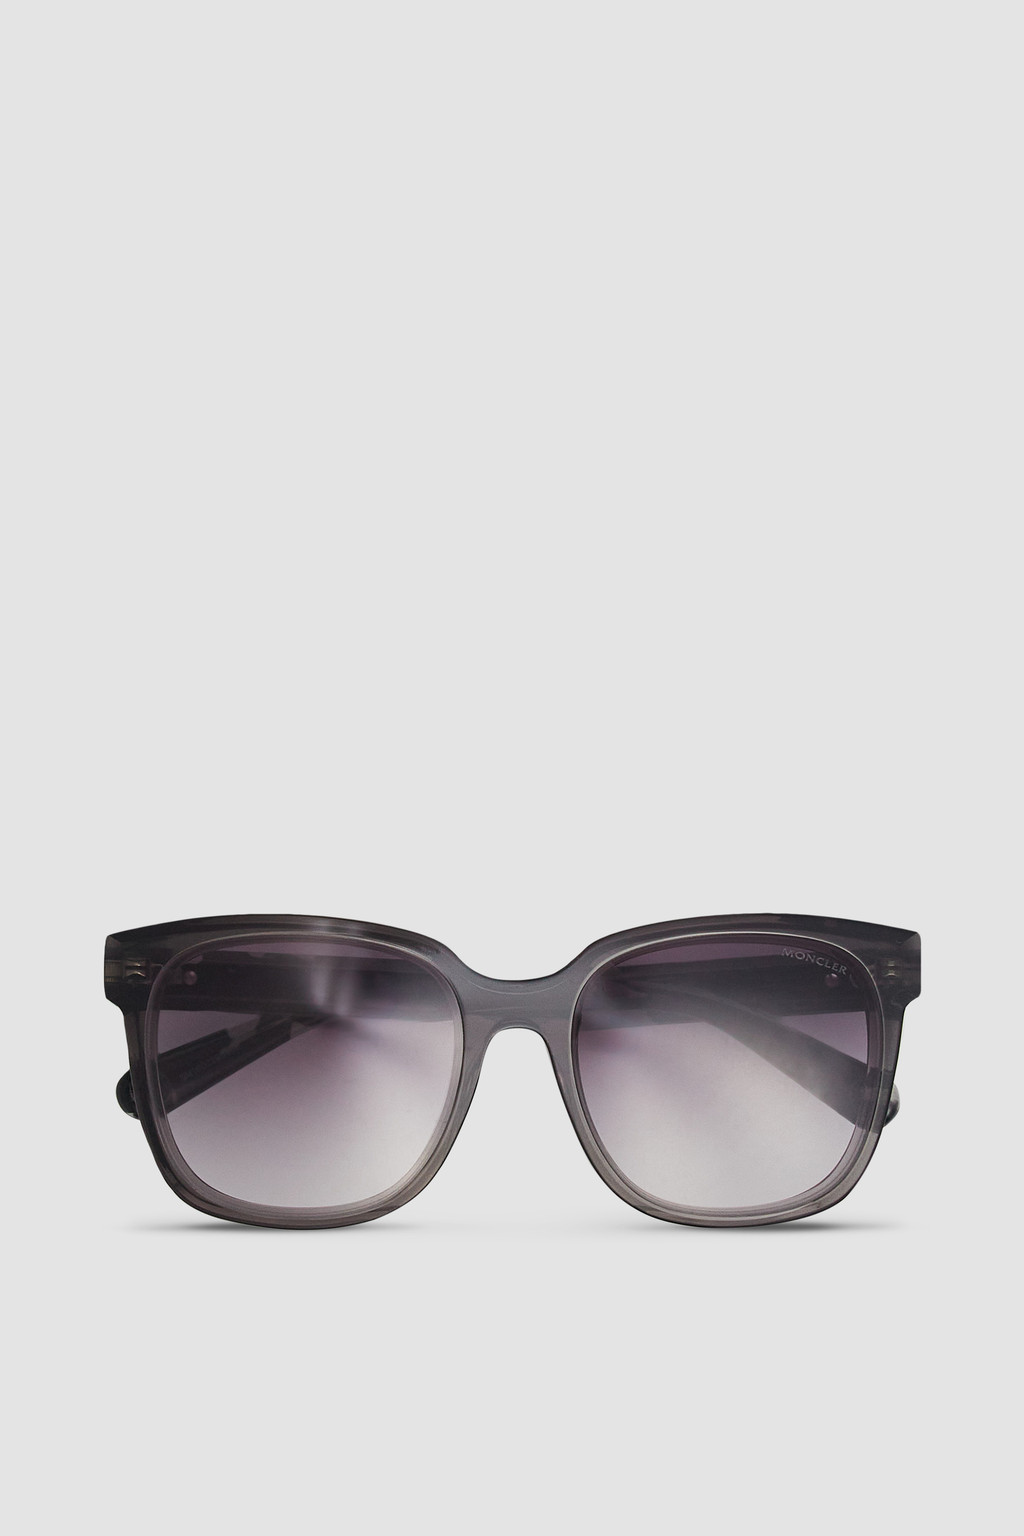 New Stylish Round Gradient Sunglasses For Women-Unique and Classy – UNIQUE  & CLASSY